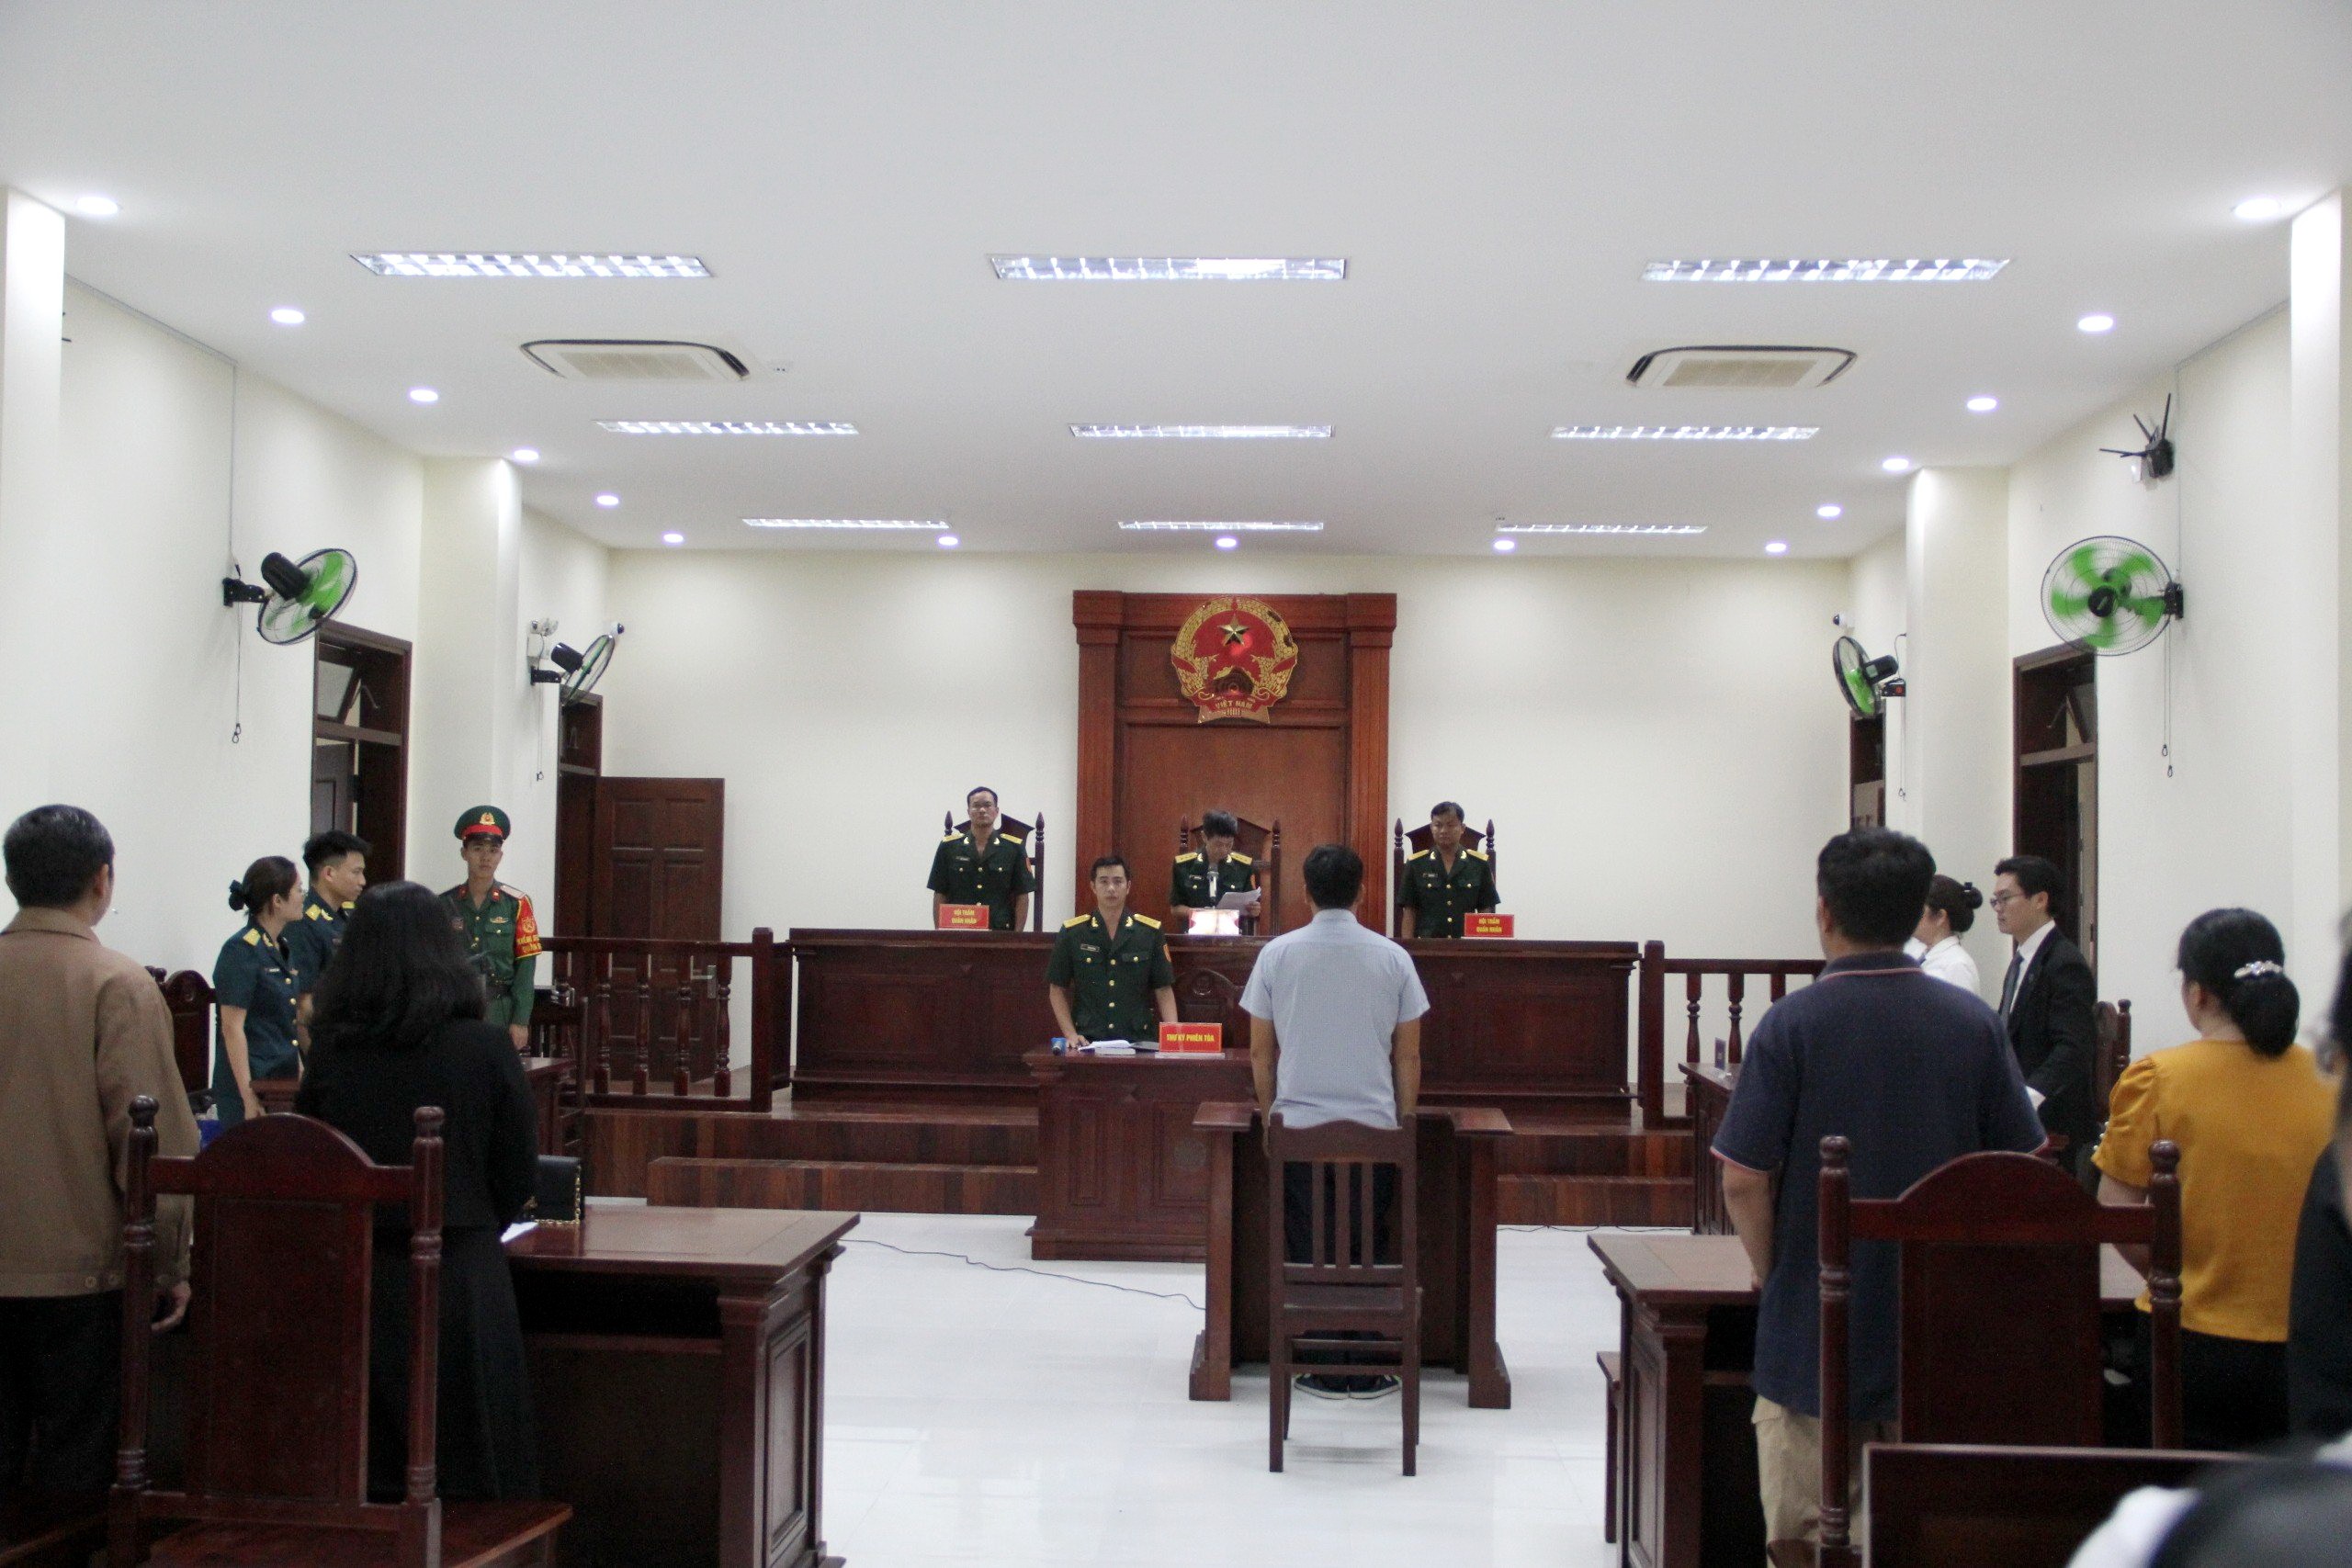 Hồ sơ điều tra - Phạt cựu Thiếu tá tông chết nữ sinh lớp 12 ở Ninh Thuận 14 tháng tù